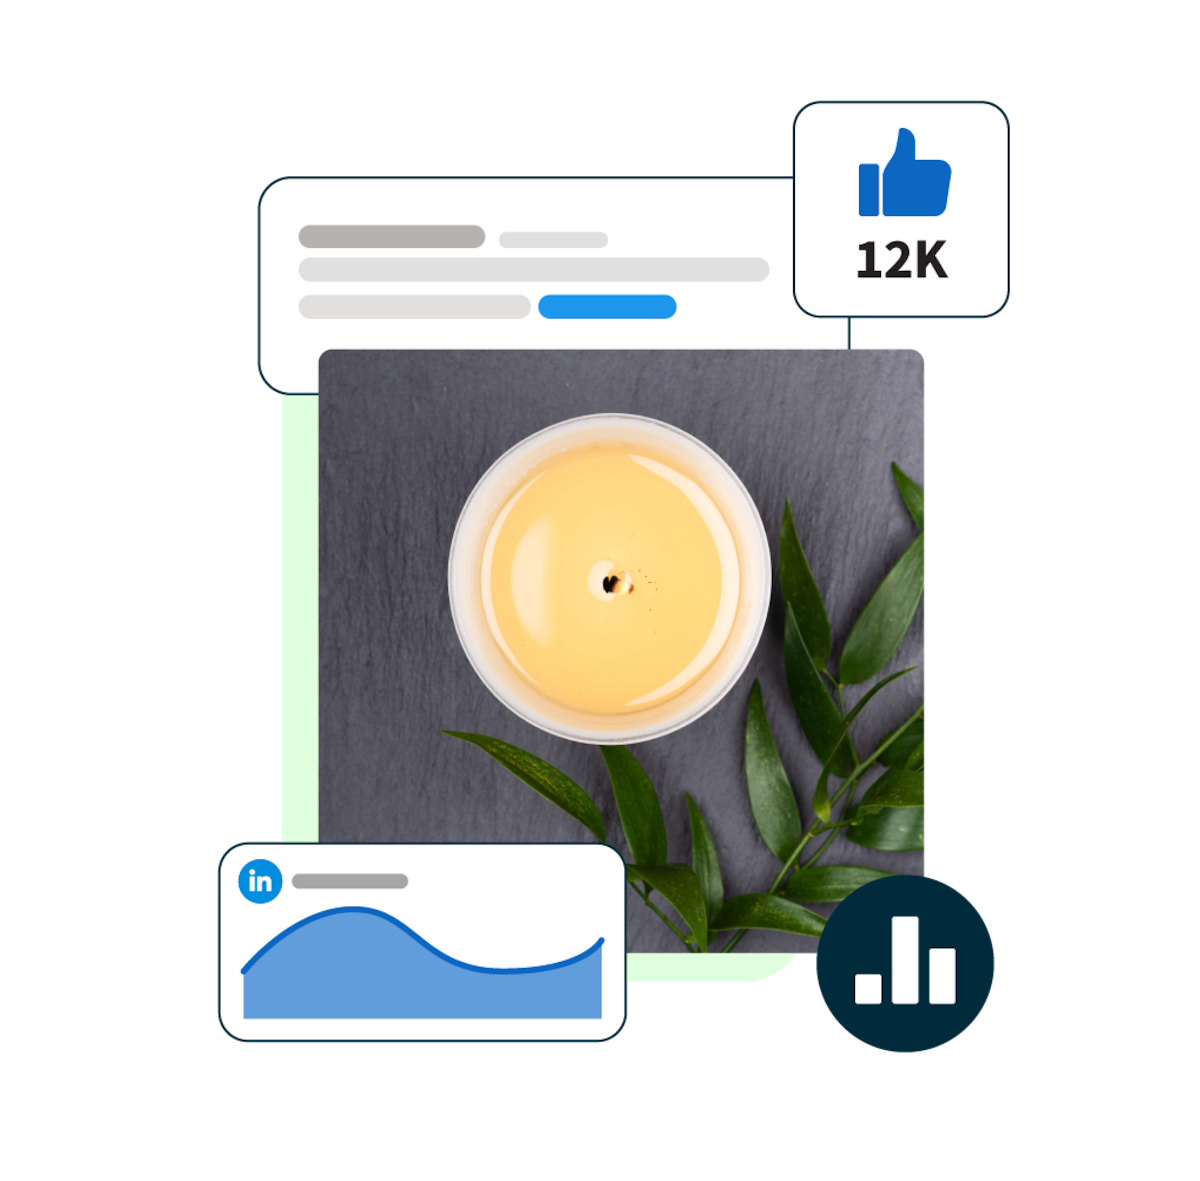 Bild einer Kerze, umgeben von LinkedIn-Statistik-Popups